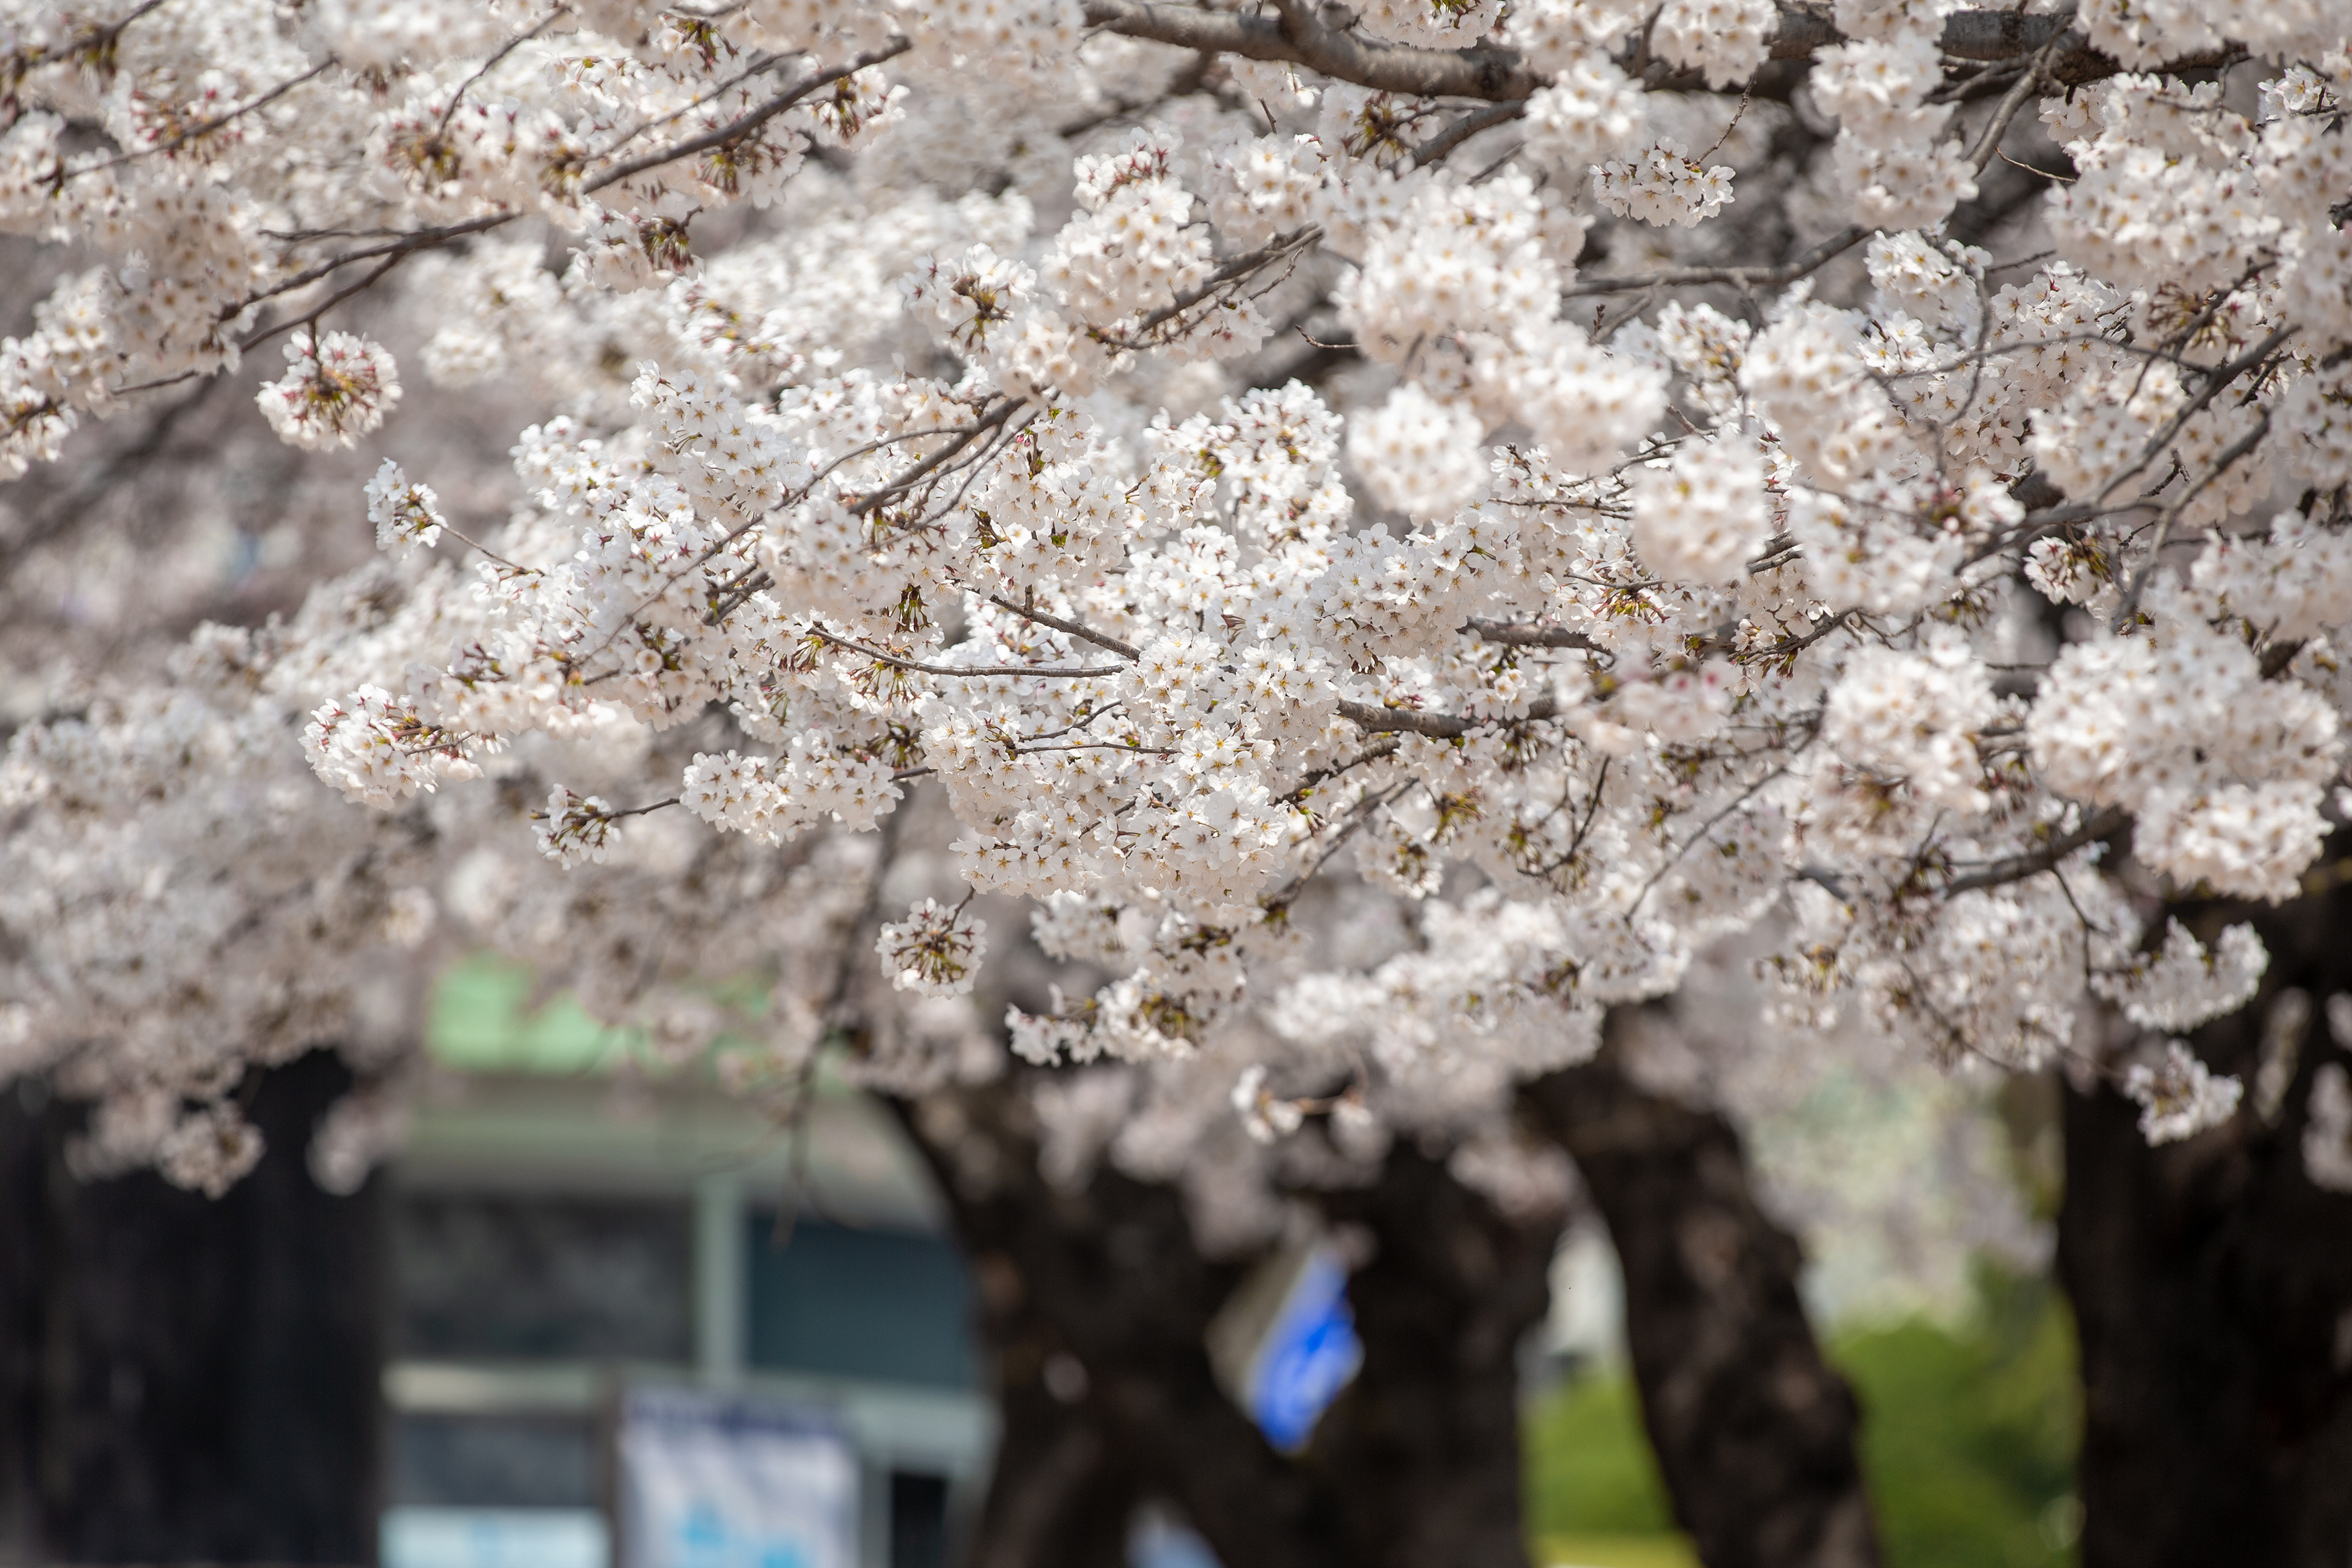 에덴벚꽃길 벚꽃축제는 1.2km에 달하는 벚꽃터널에 차량통행을 제한해 가족, 연인, 친구들과 소중한 추억을 만들 수 있습니다.